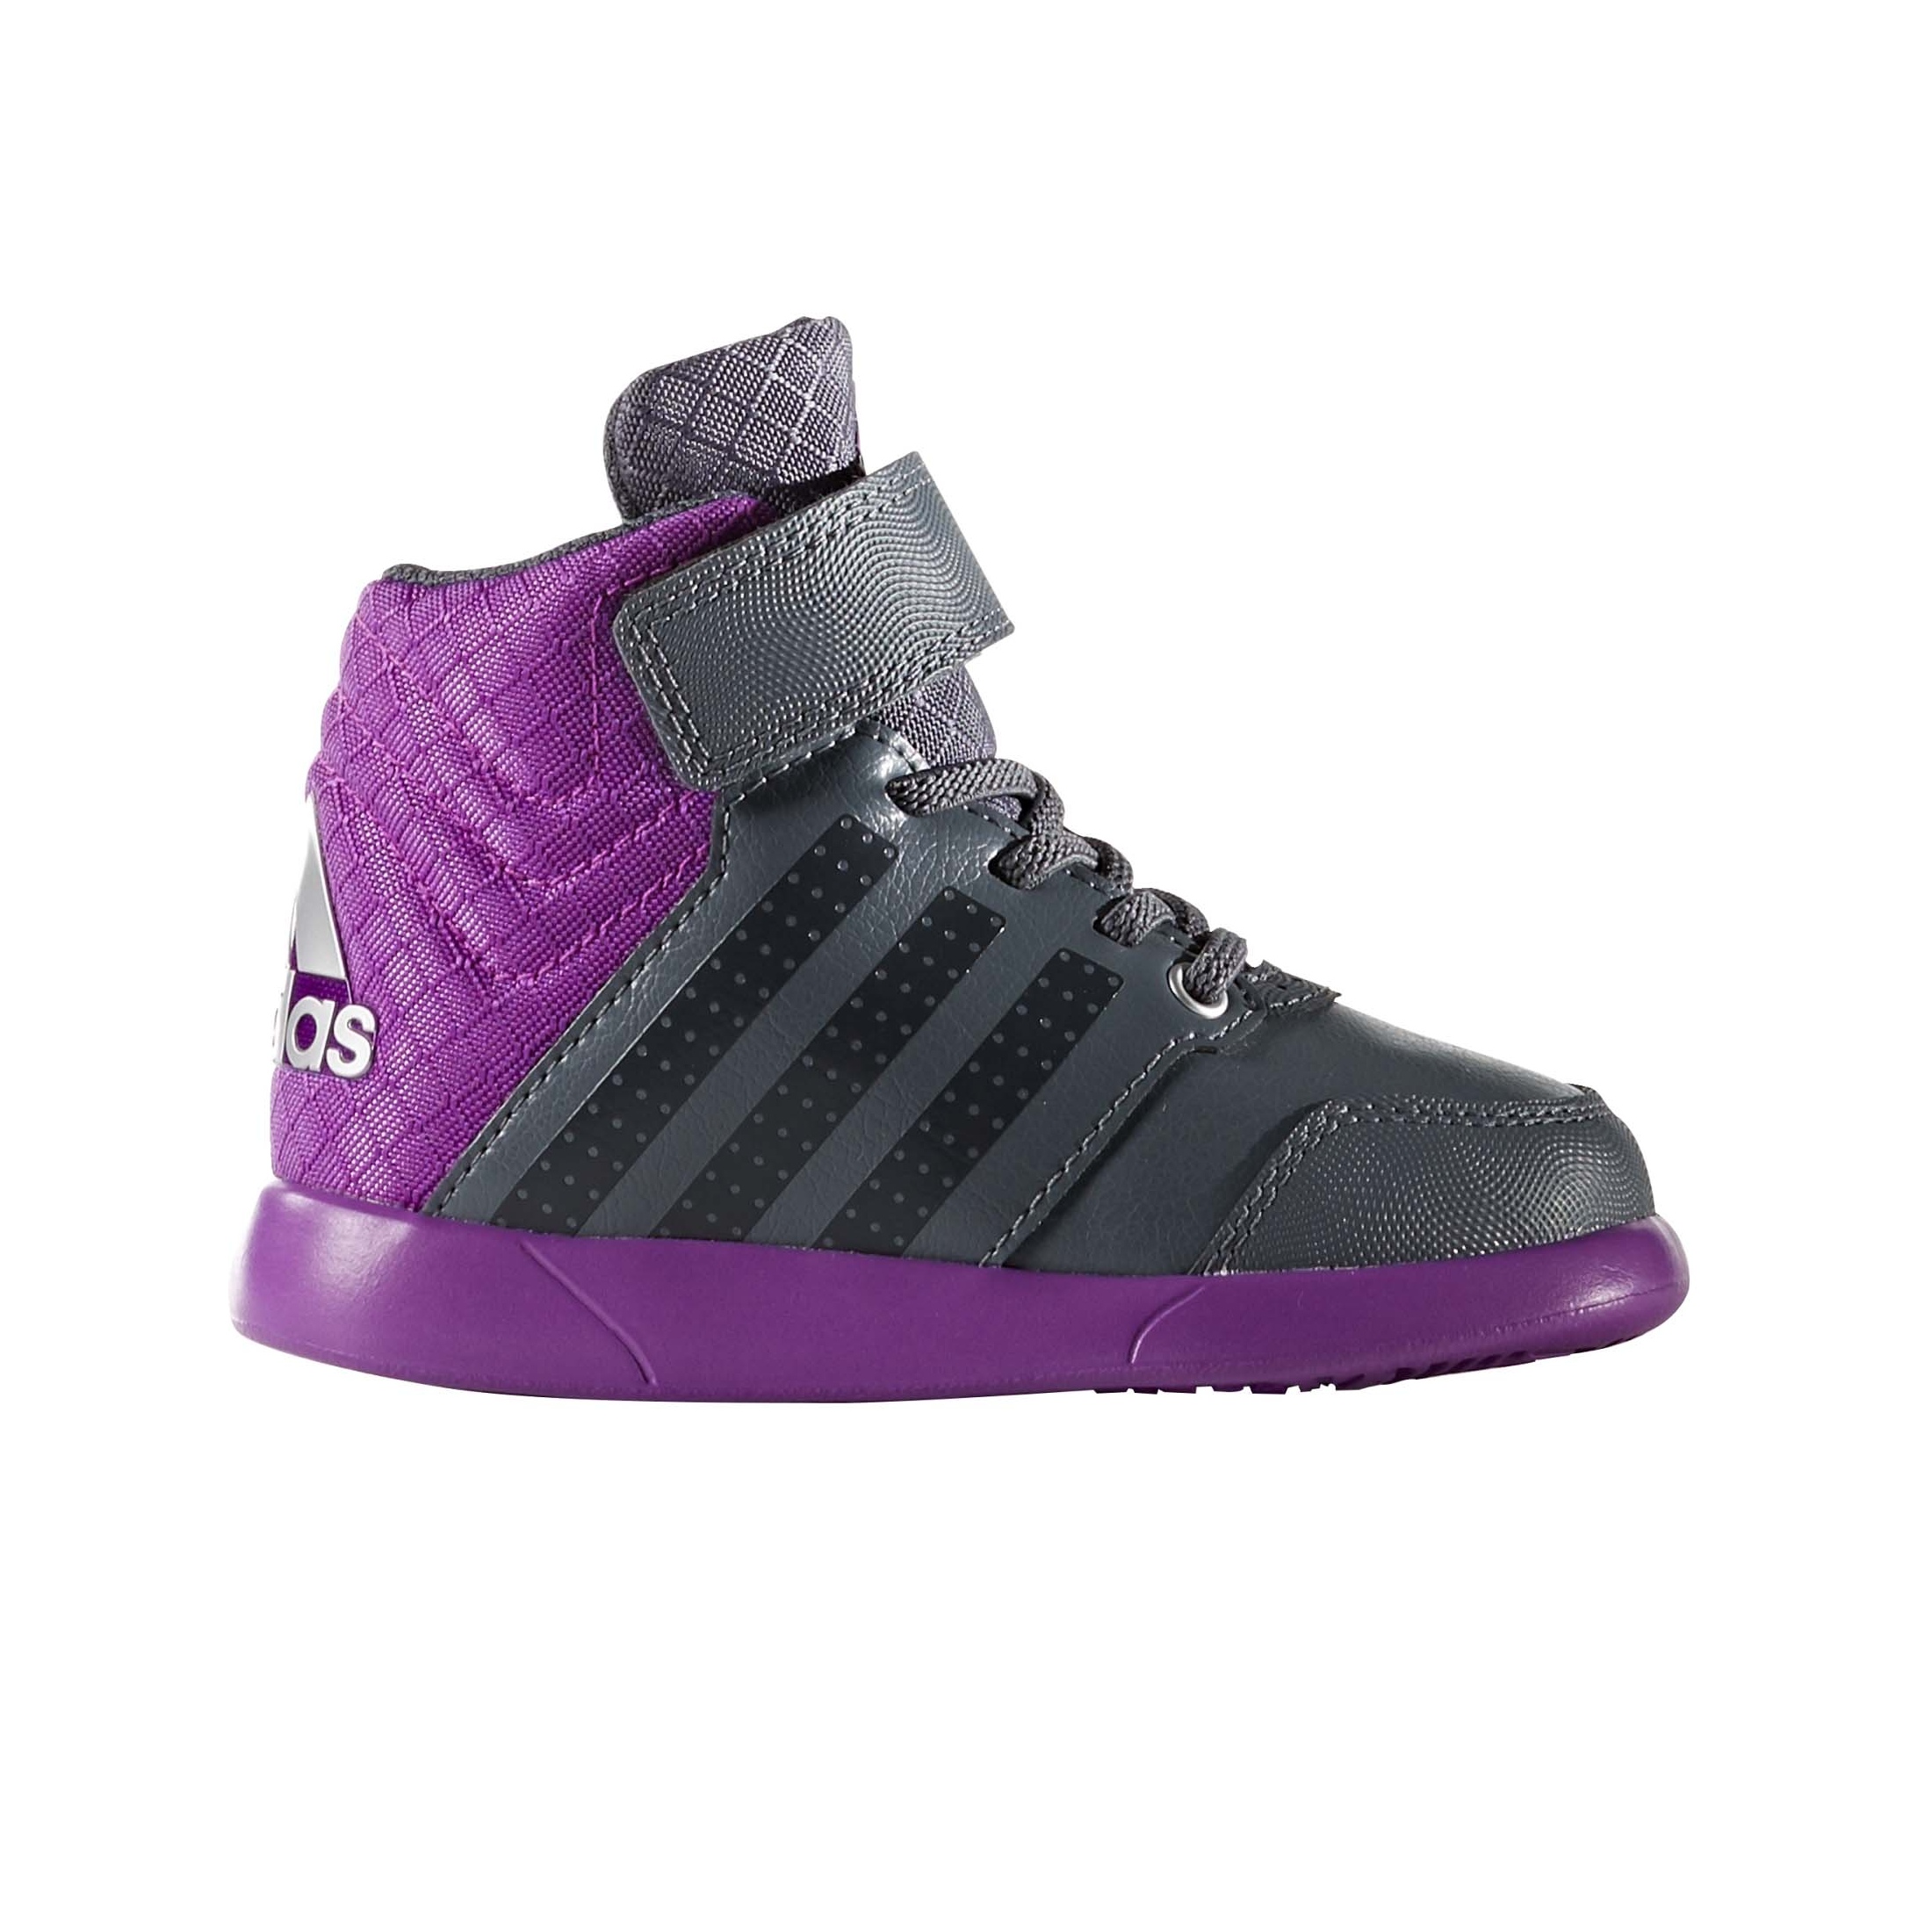 otro Activo Me preparé Adidas Jan BS 2 Mid I (onix/dark grey/shock purple)